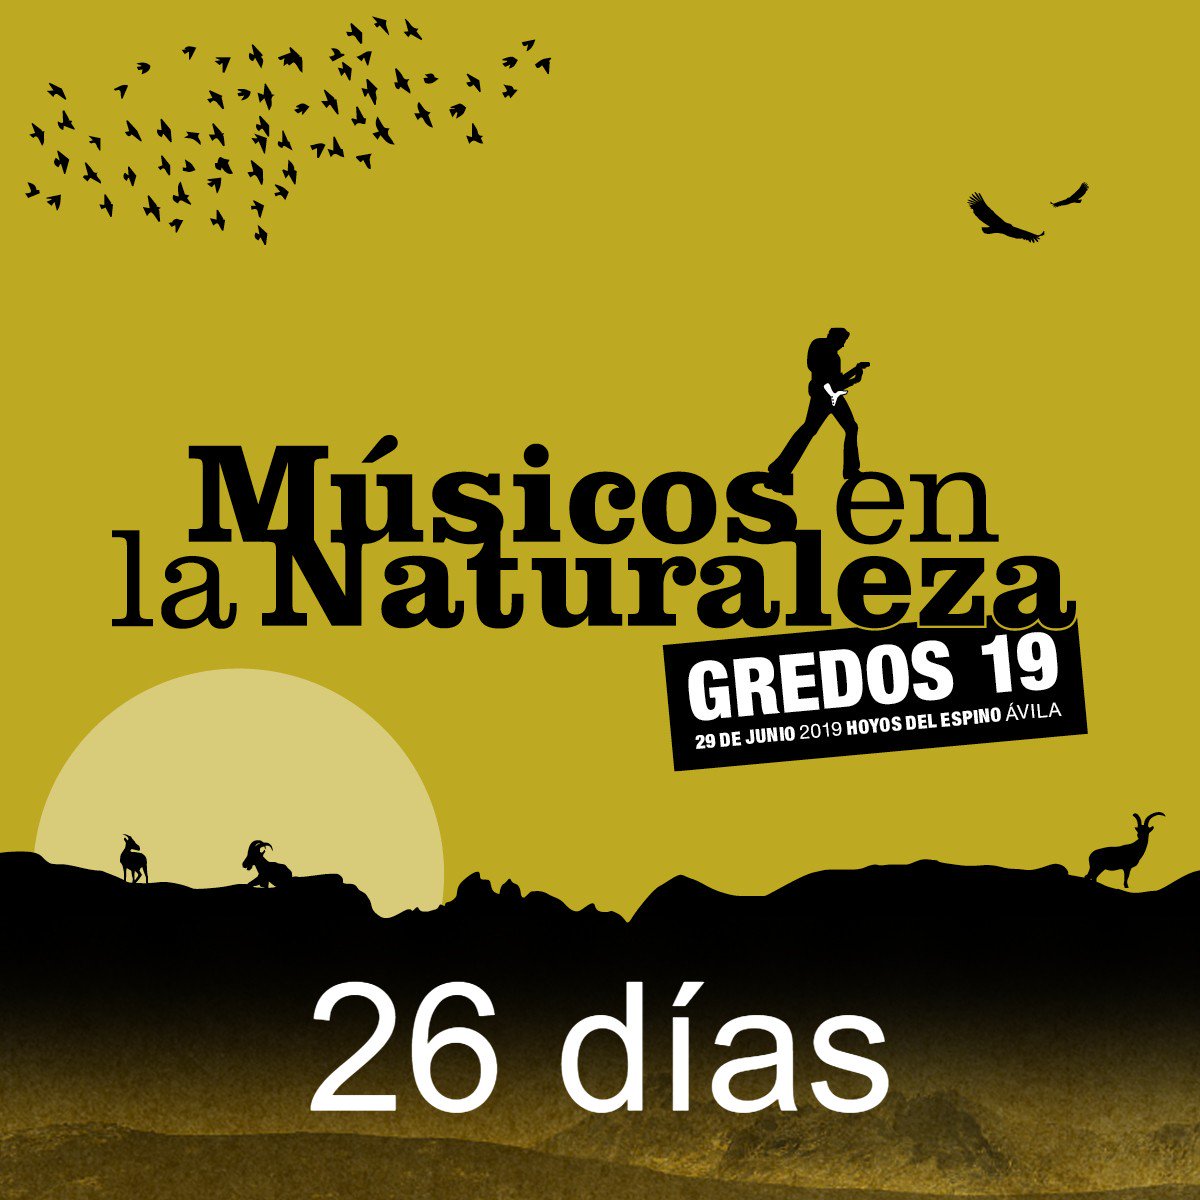 ¡Ahora sí que sí! Entramos de lleno en el mes de #MúsicosenlaNaturaleza. ¿Nos ayudáis con la cuenta atrás? musicosenlanaturaleza.es #MN2019 @GetInMusic @RockFM_ES @Riffmusic @patrimonionat @CyLesVida #Gredos #festivales